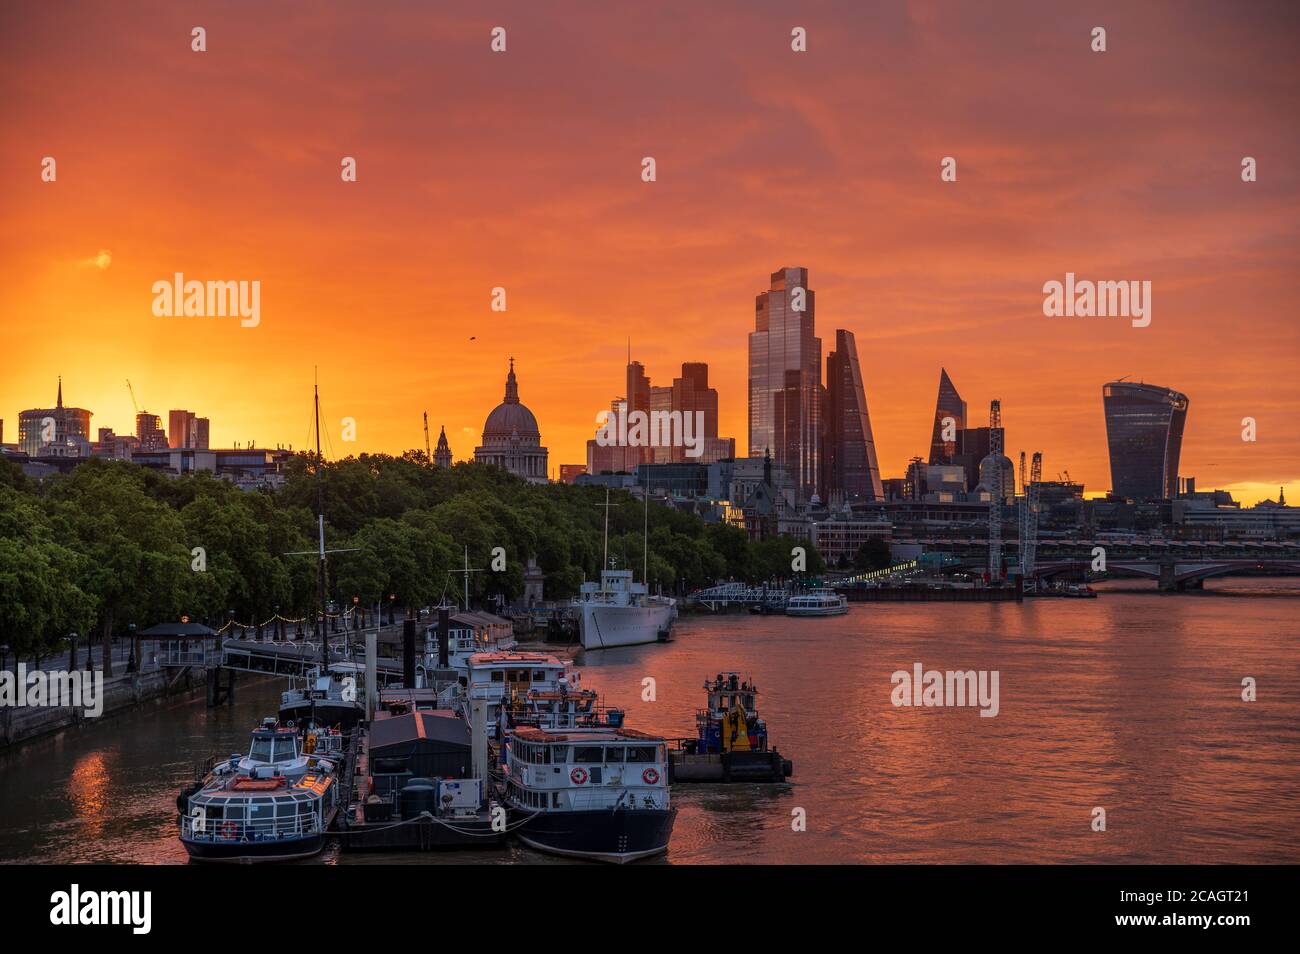 Lever du soleil dans le centre de Londres, avec le soleil qui vient d'apparaître, Londres Banque D'Images